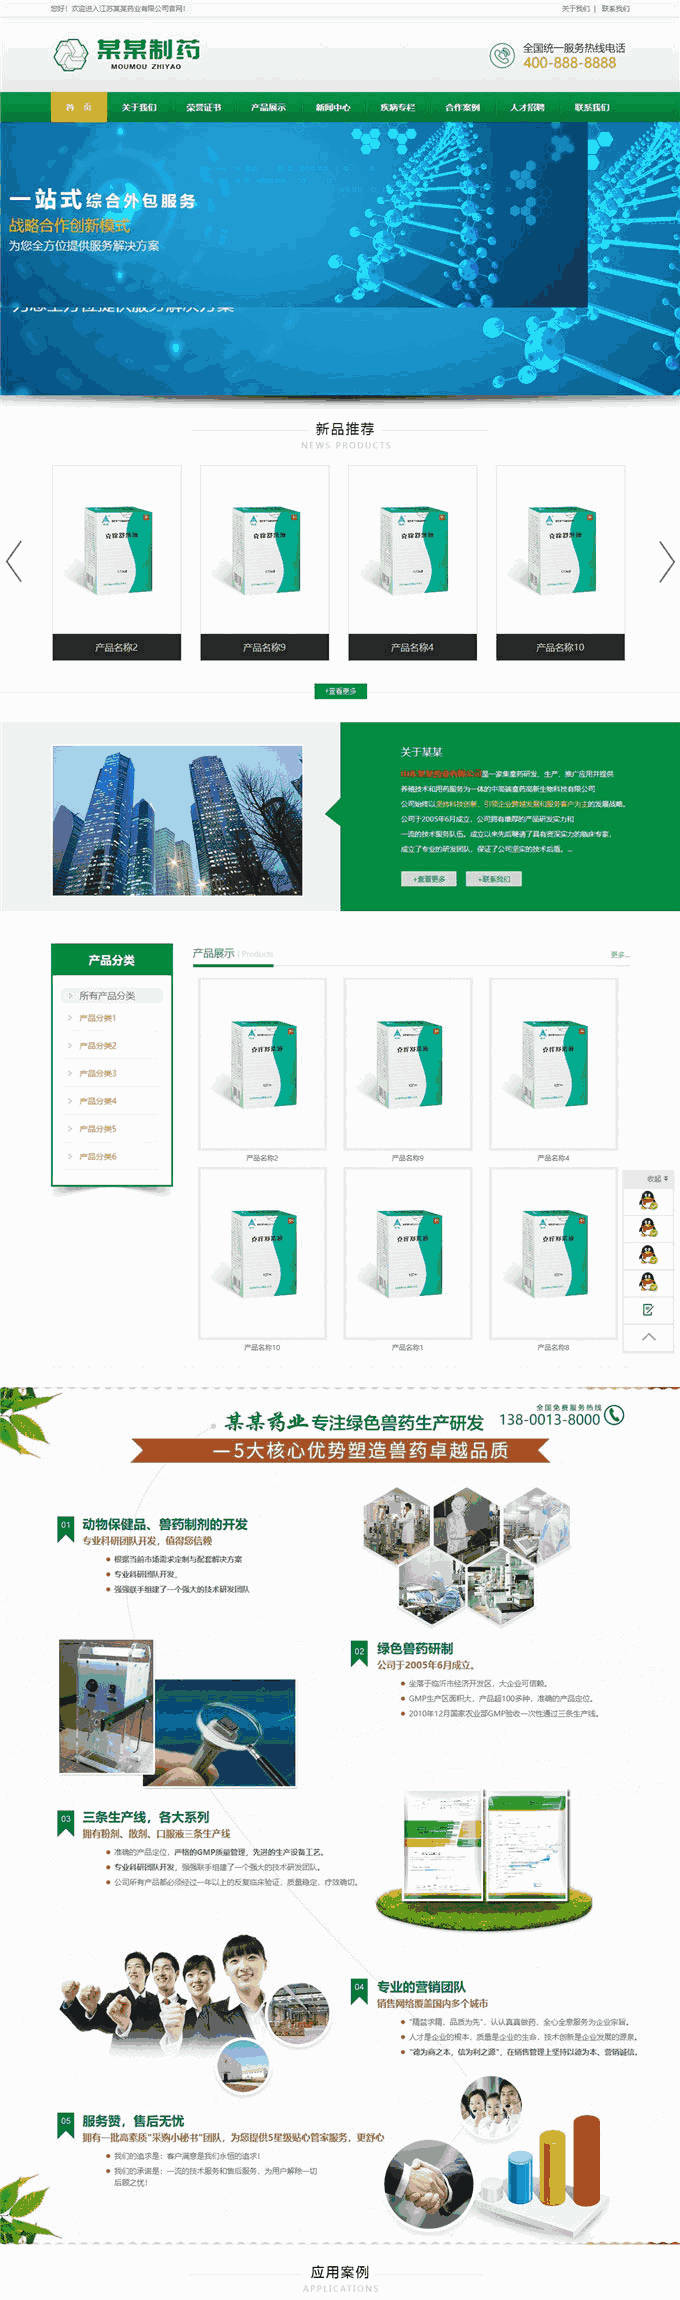 绿色制药厂药业公司营销型企业网站Wordpress模板效果图